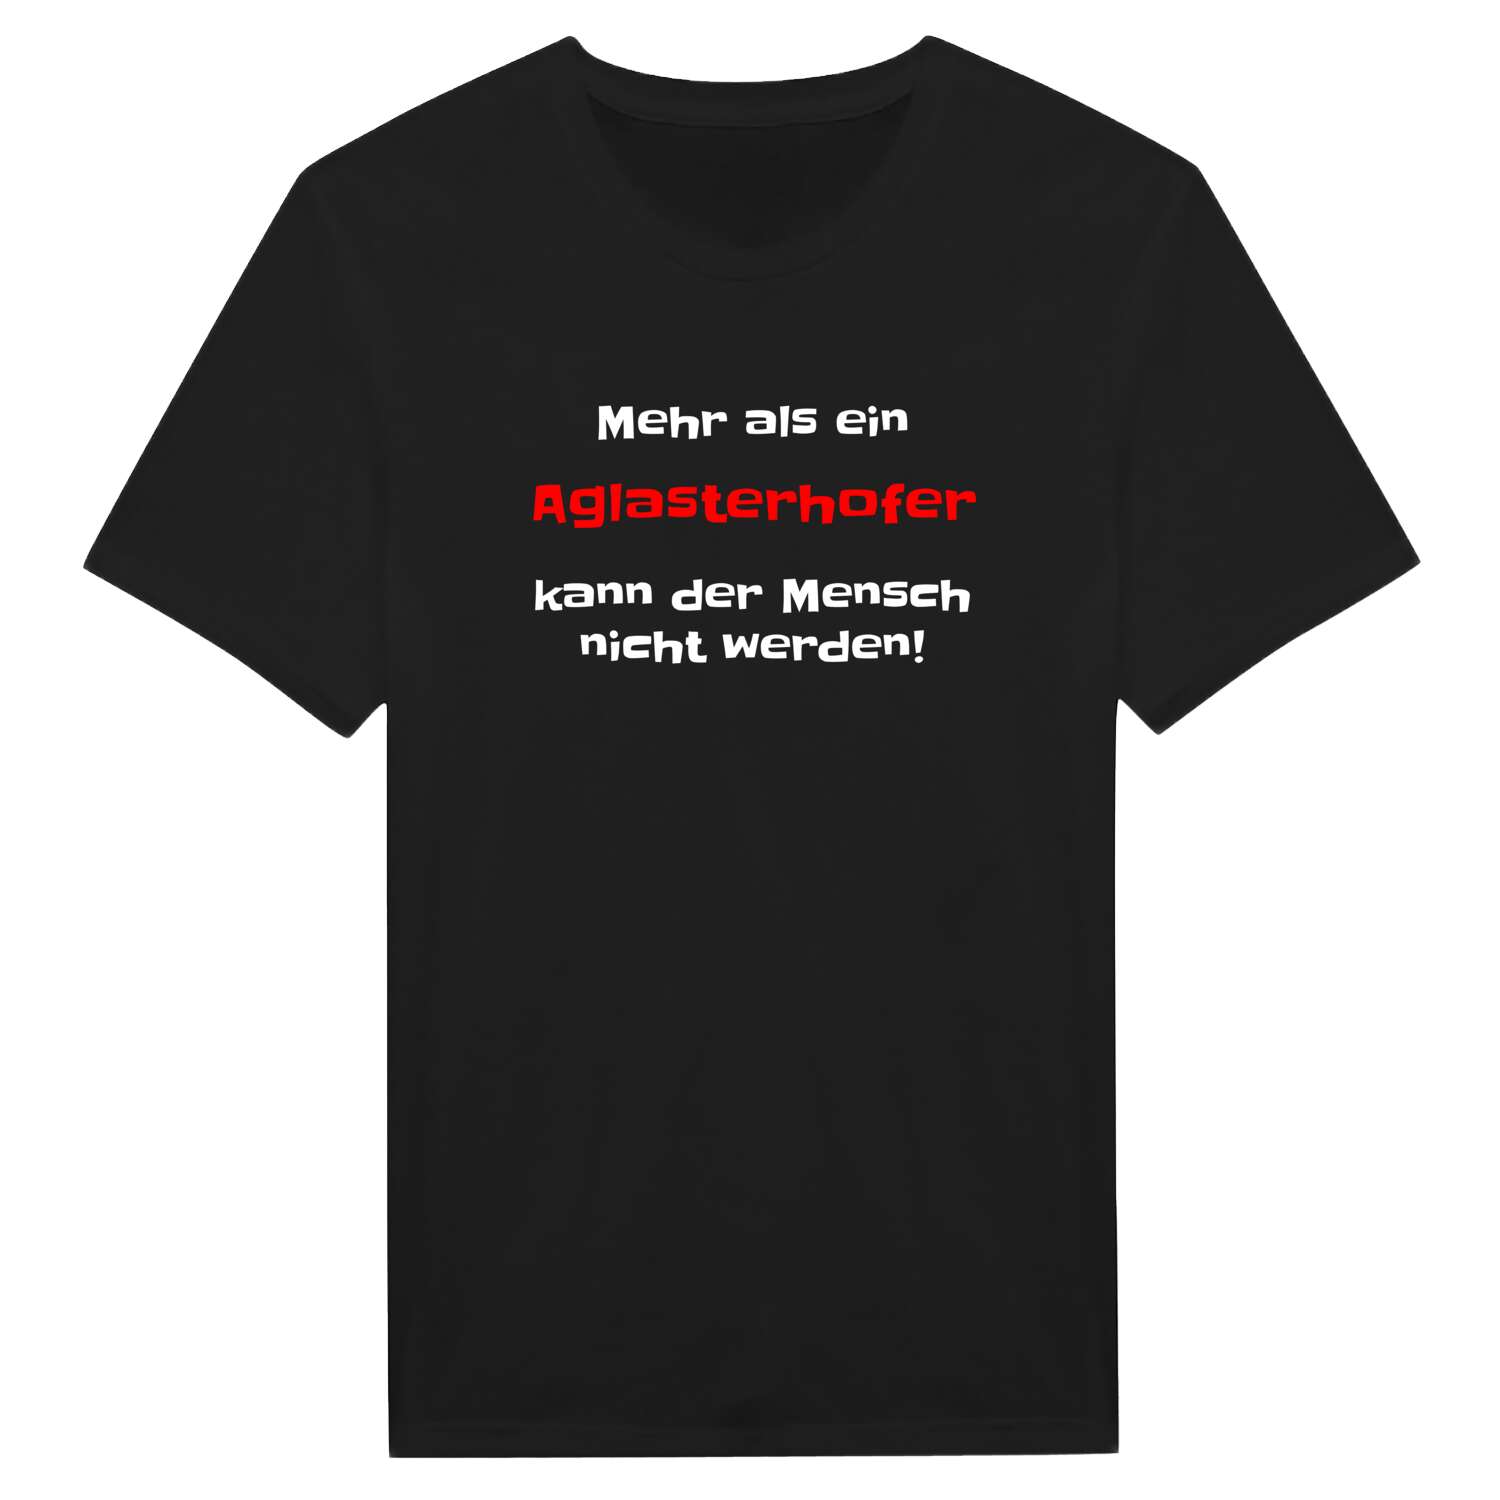 Aglasterhof T-Shirt »Mehr als ein«